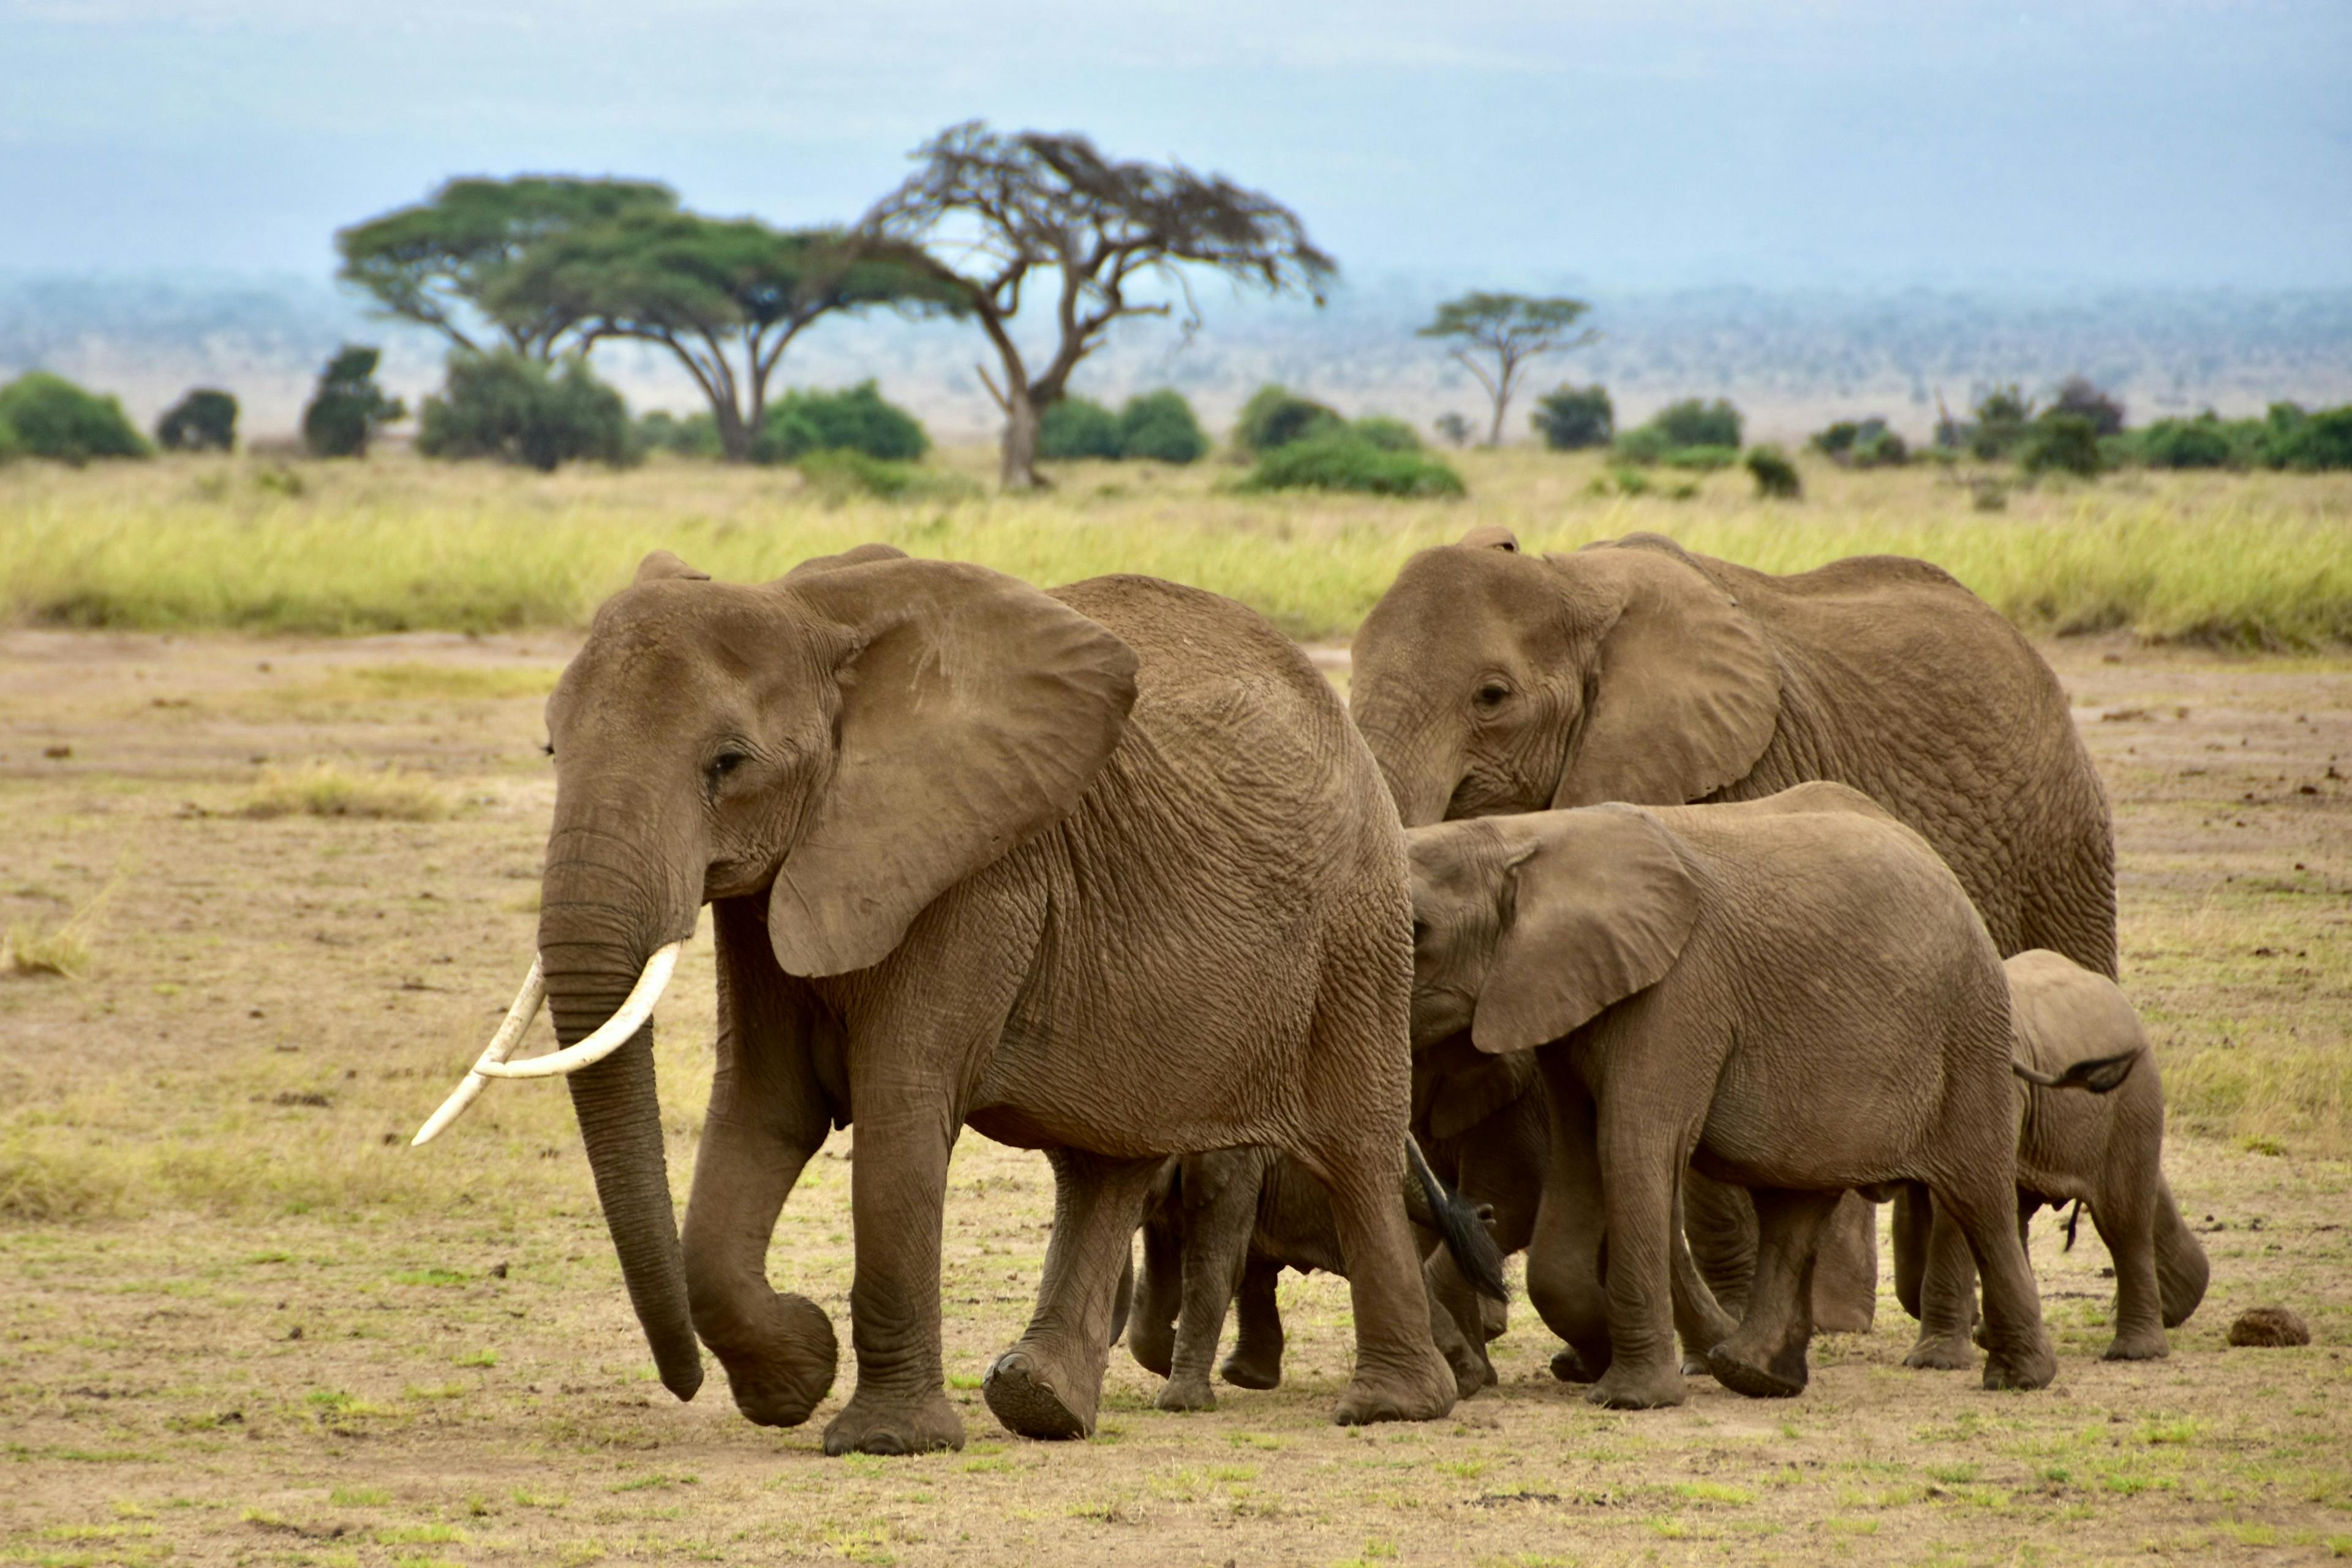 Elephants walking in Amboseli National Park in Kenya.